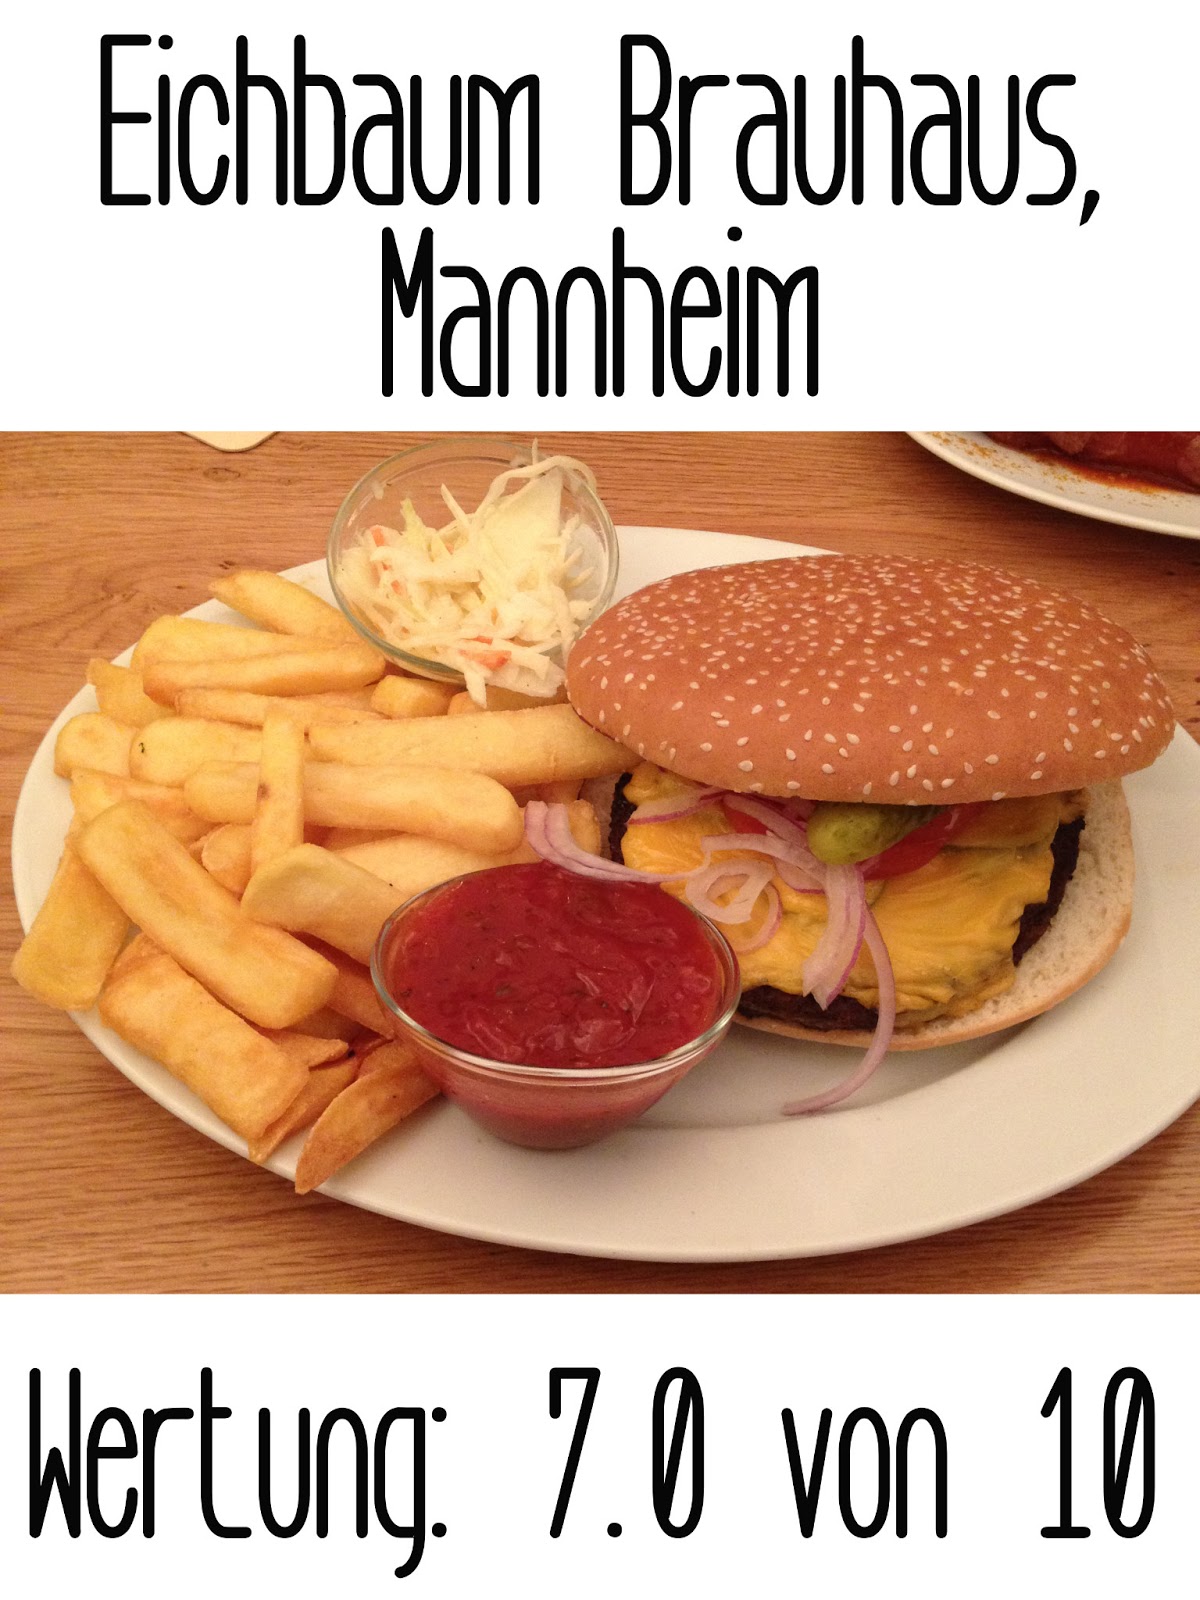 http://germanysbestburger.blogspot.de/2013/07/eichbaum-brauhaus-mannheim.html